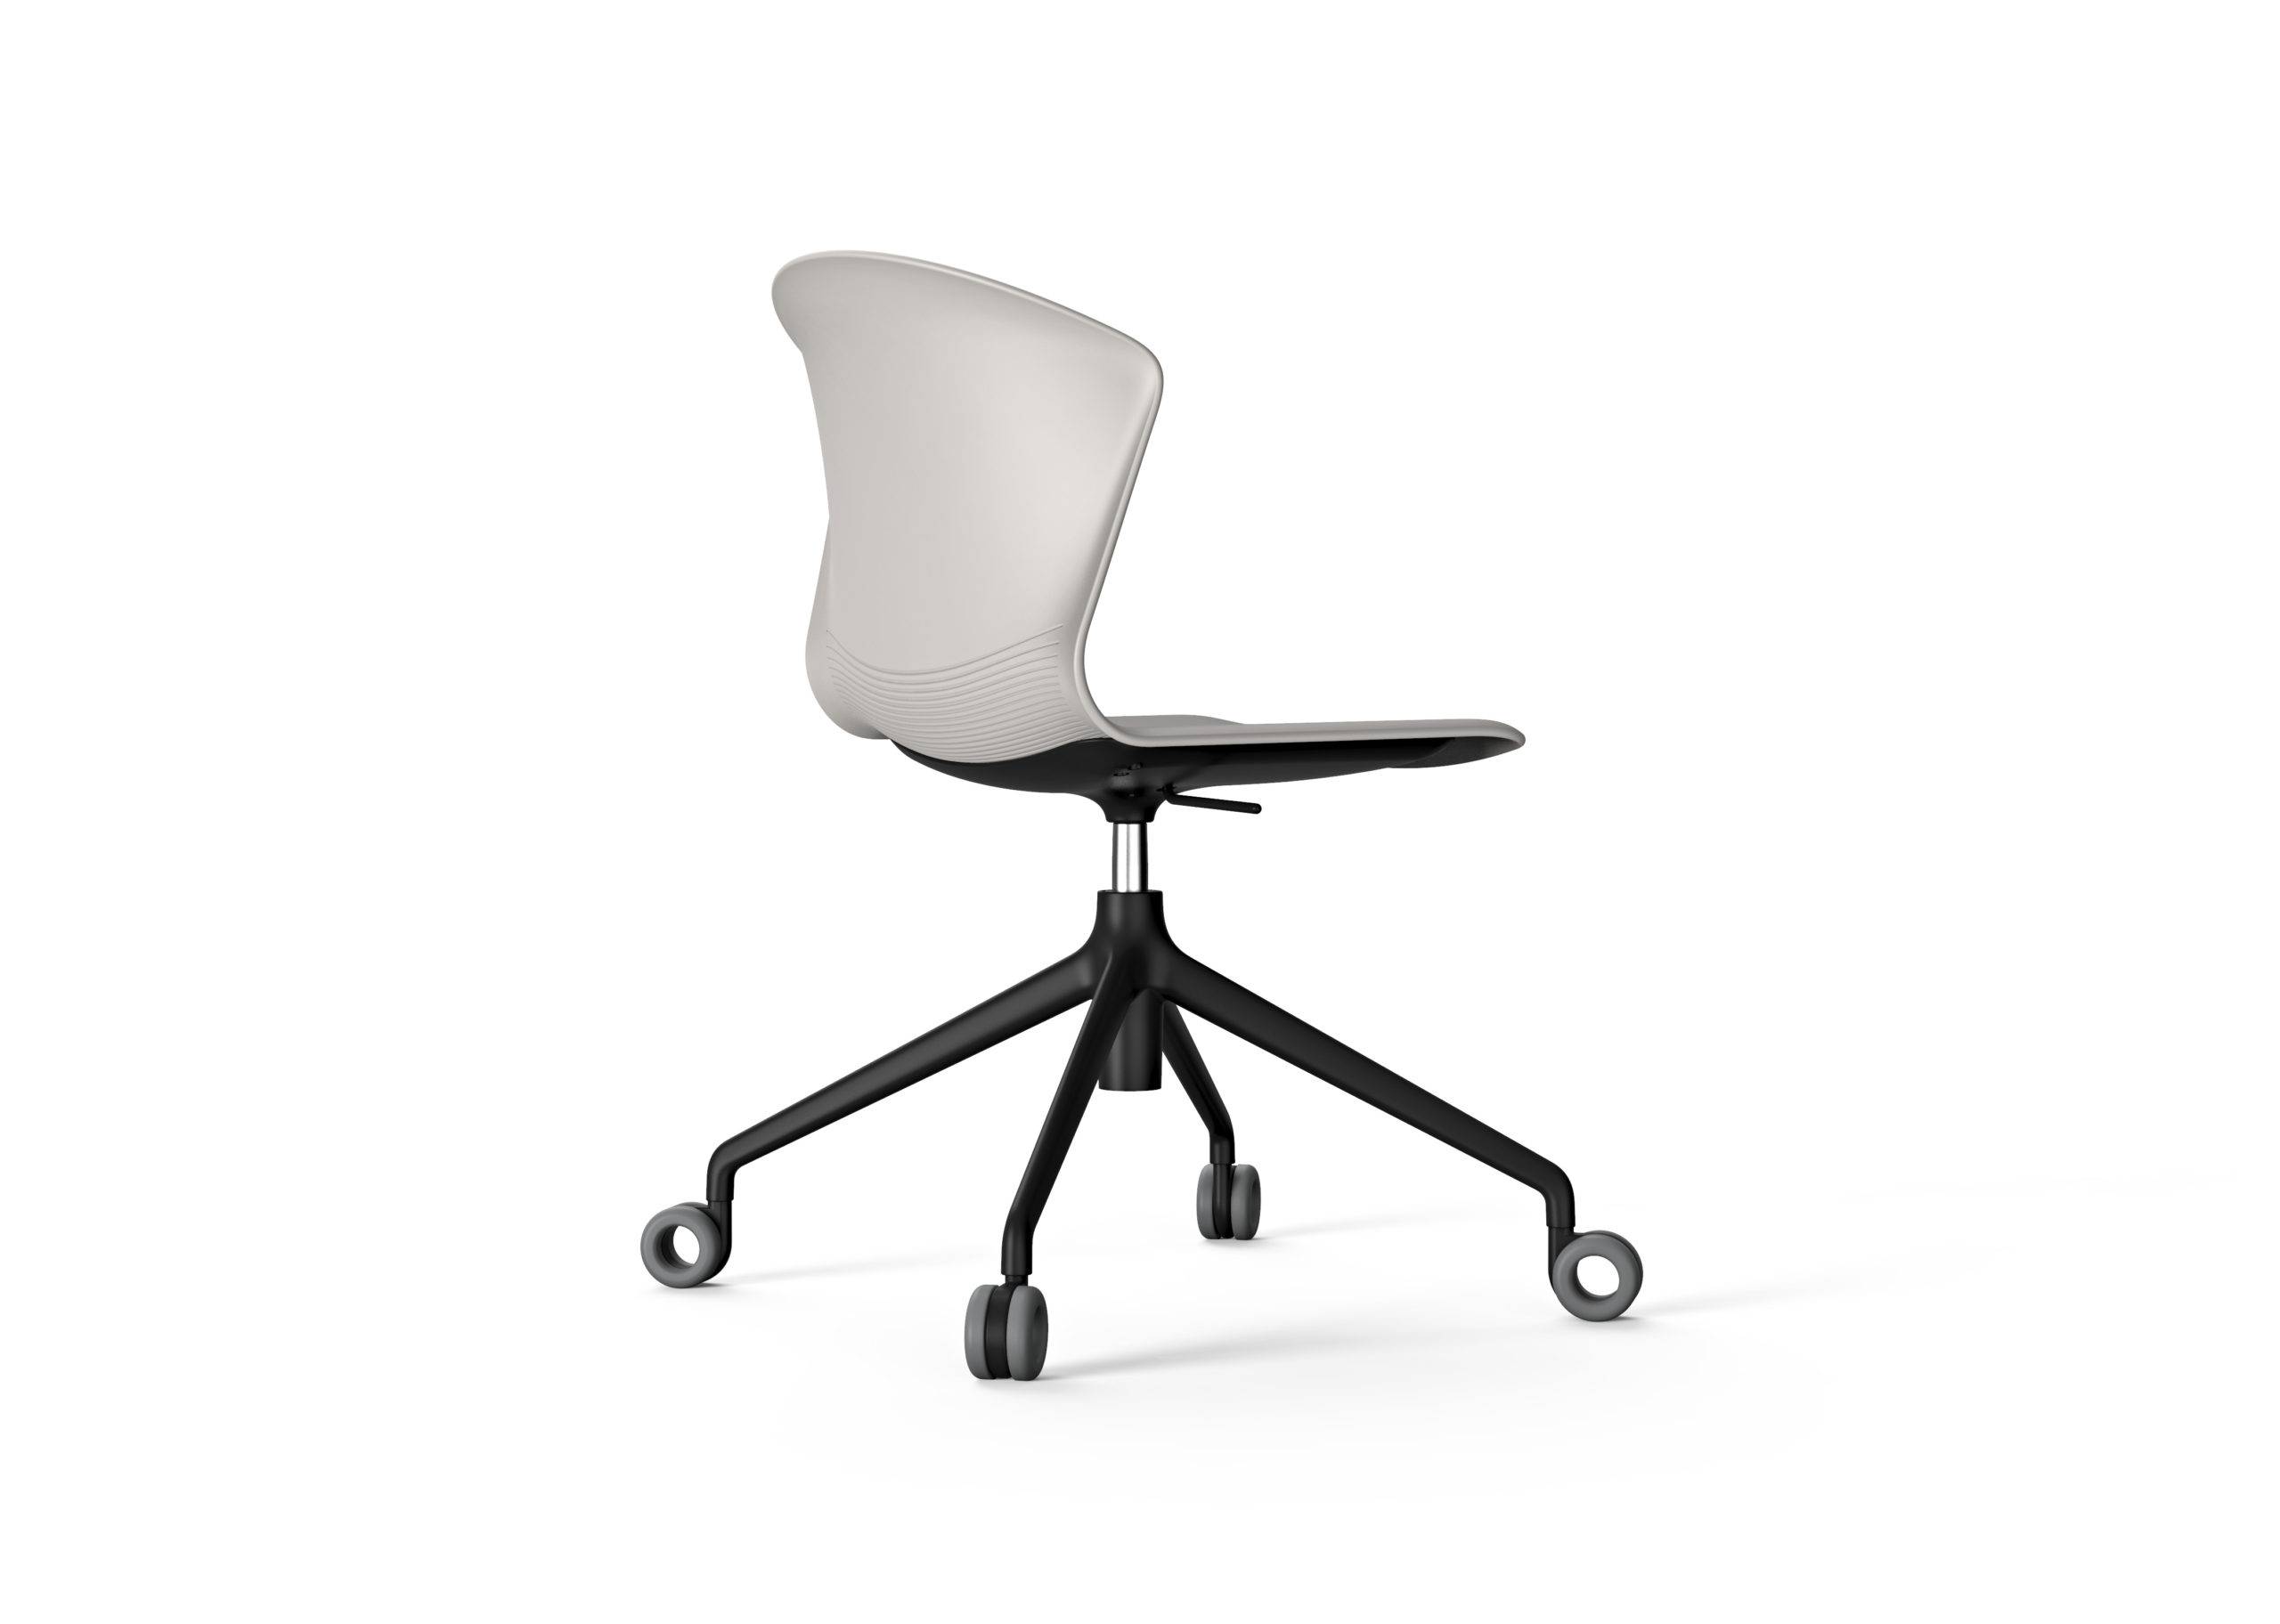 Silla Whass silla de colectividades mobiliario de oficina Impacto Diseño Valencia